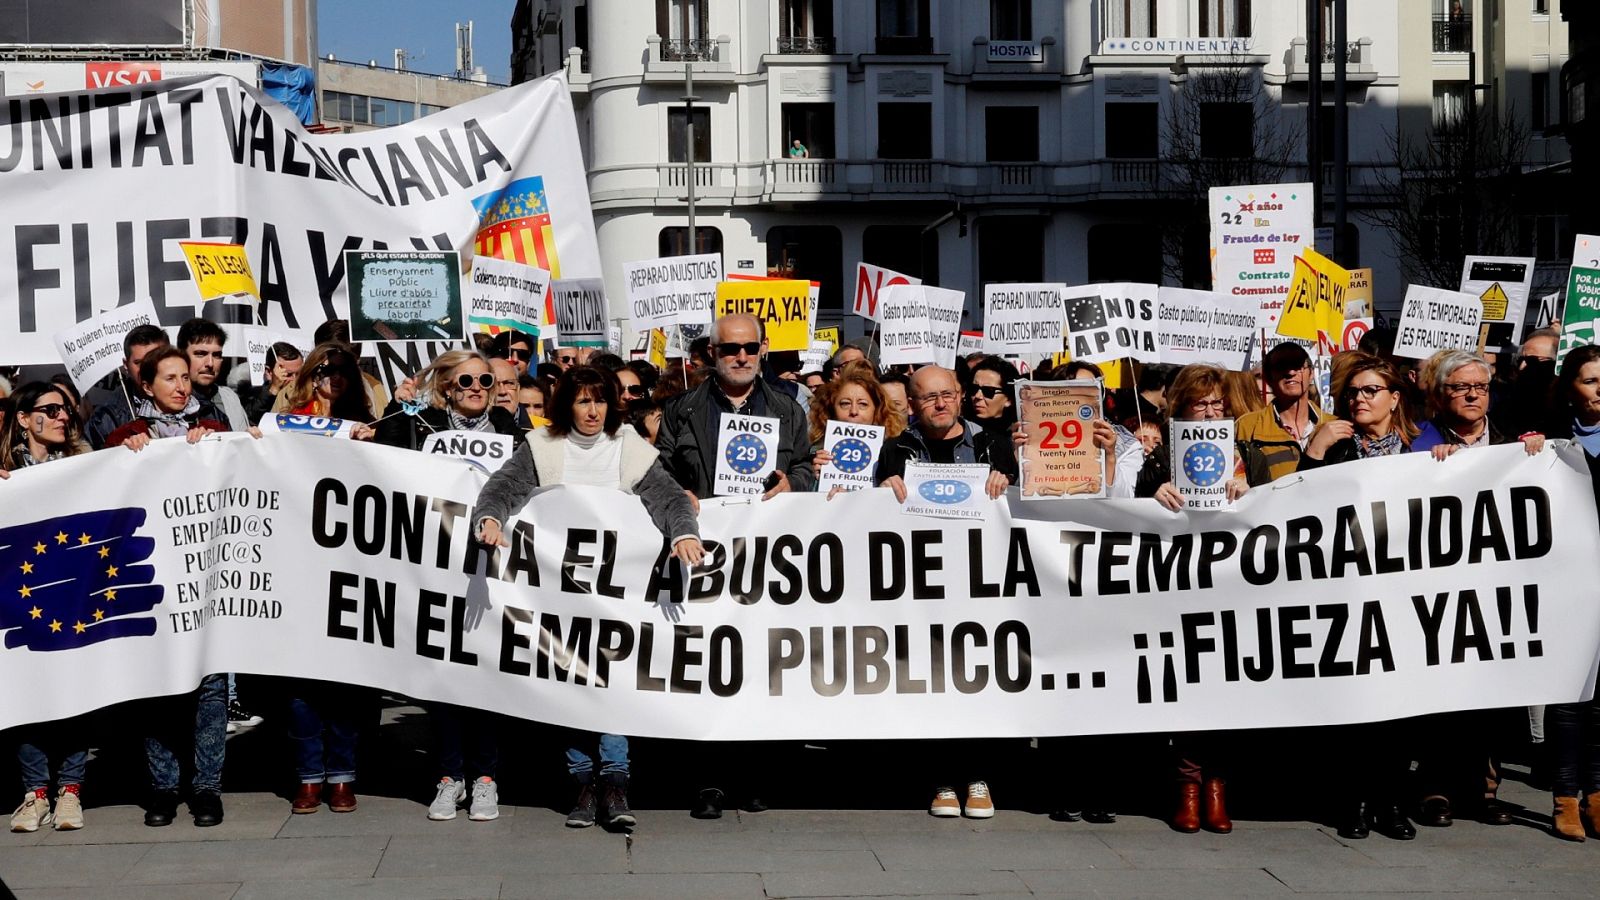 Plataformas de interinos se manifiestan en toda España para protestar contra la precariedad, el fraude en la contratación y reclaman su fijeza.